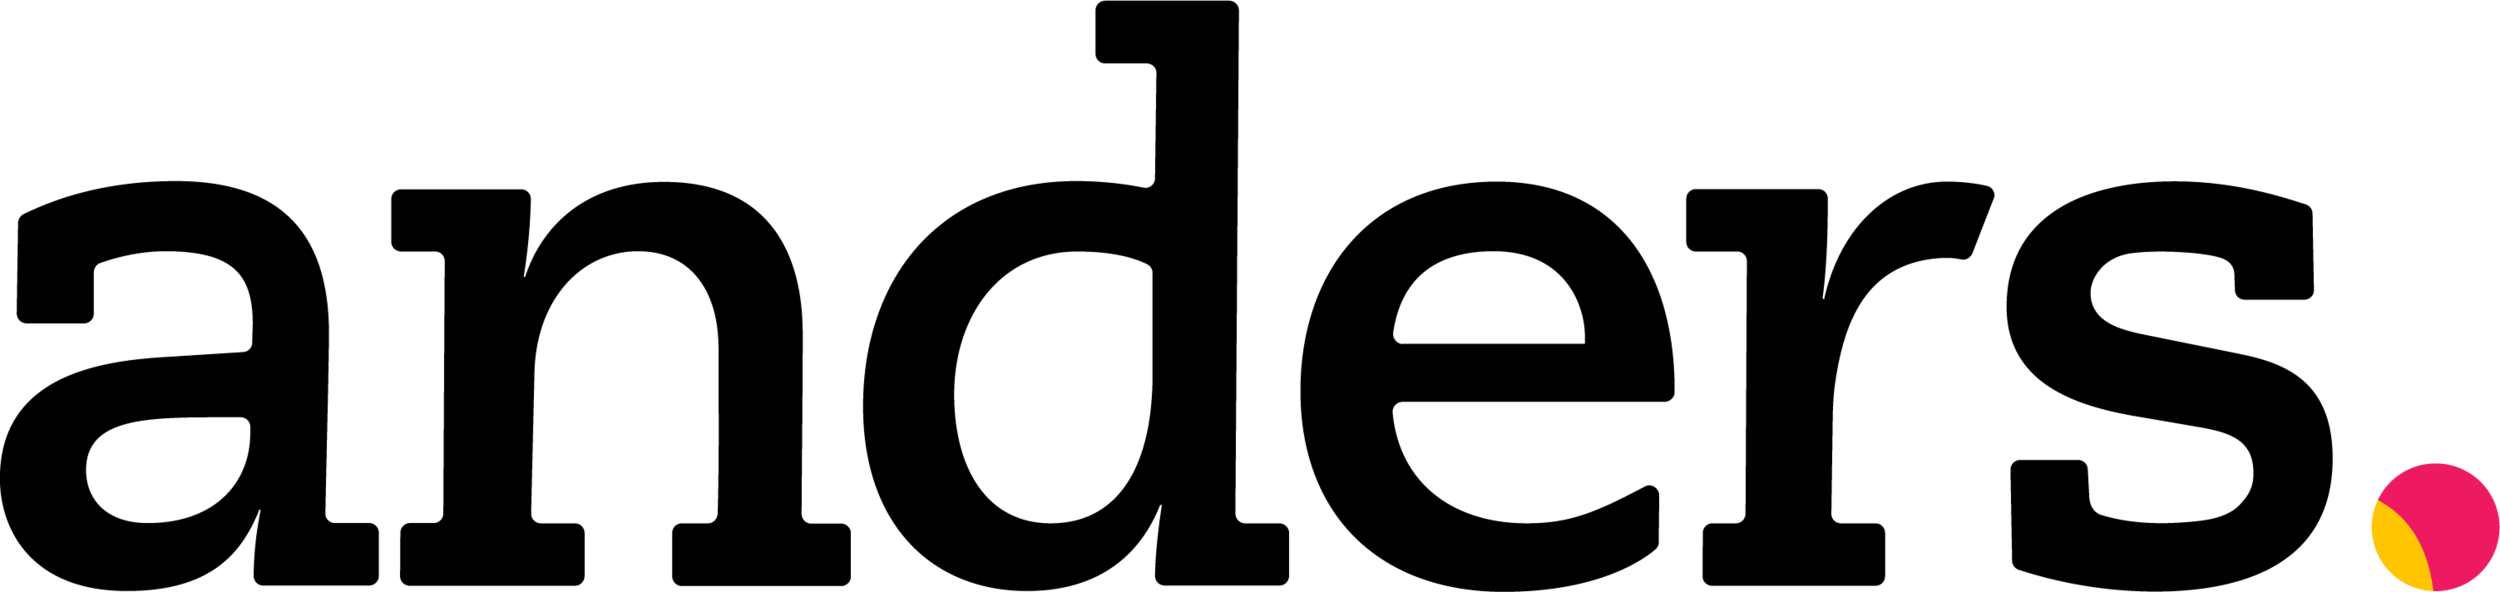 RGB_black-anders-logo.png